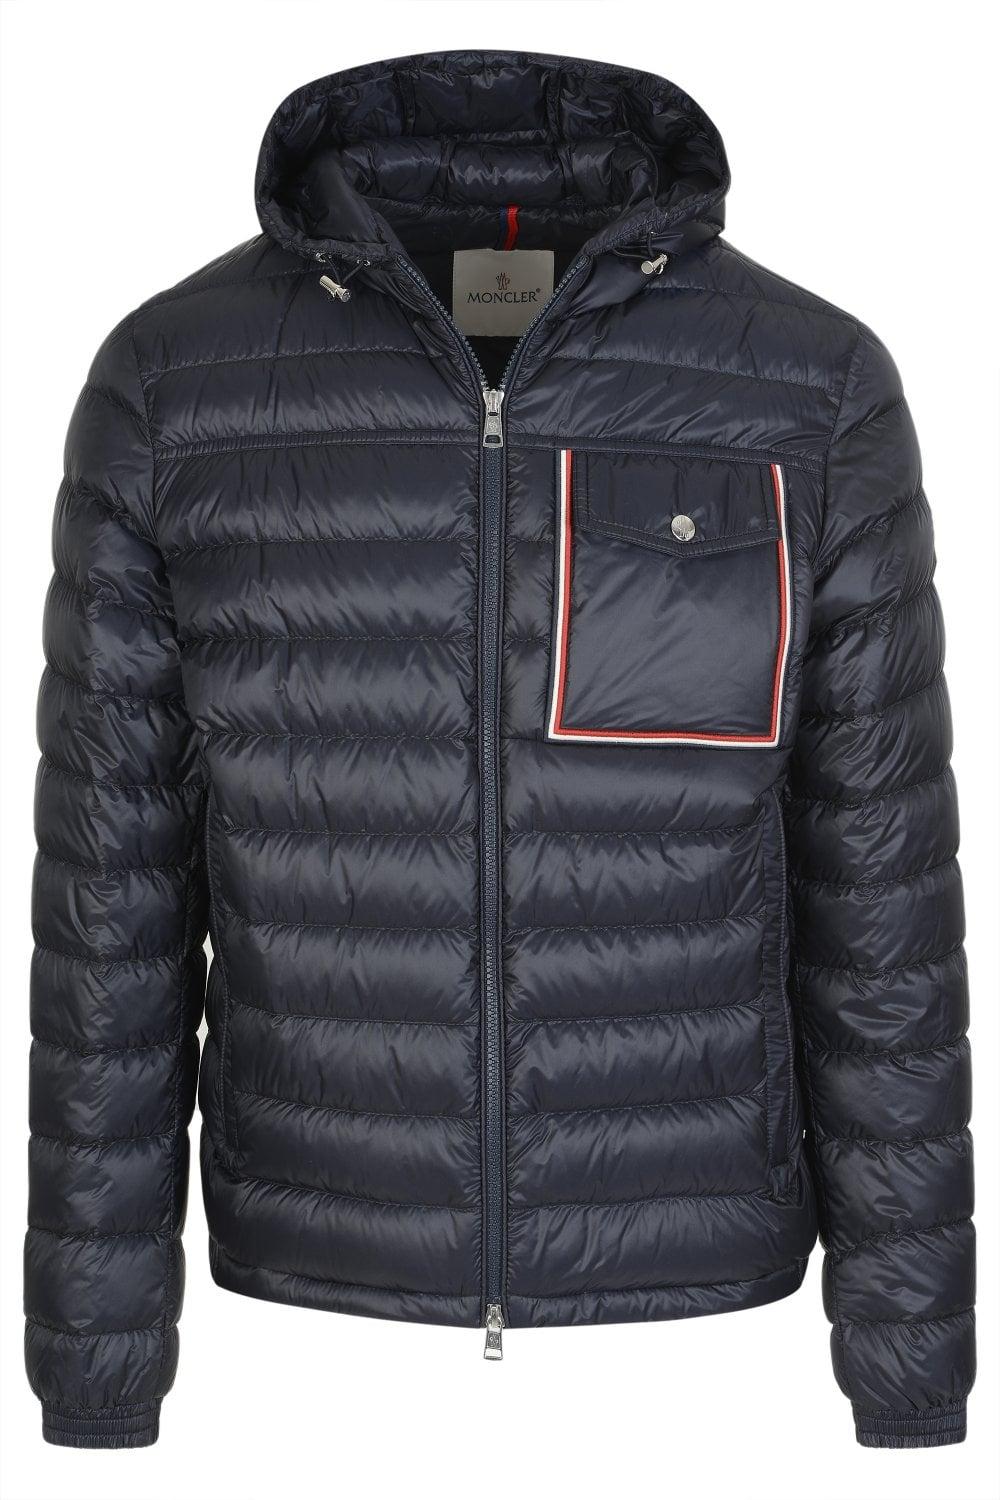 Moncler Lihou Jacket for Men | Lyst